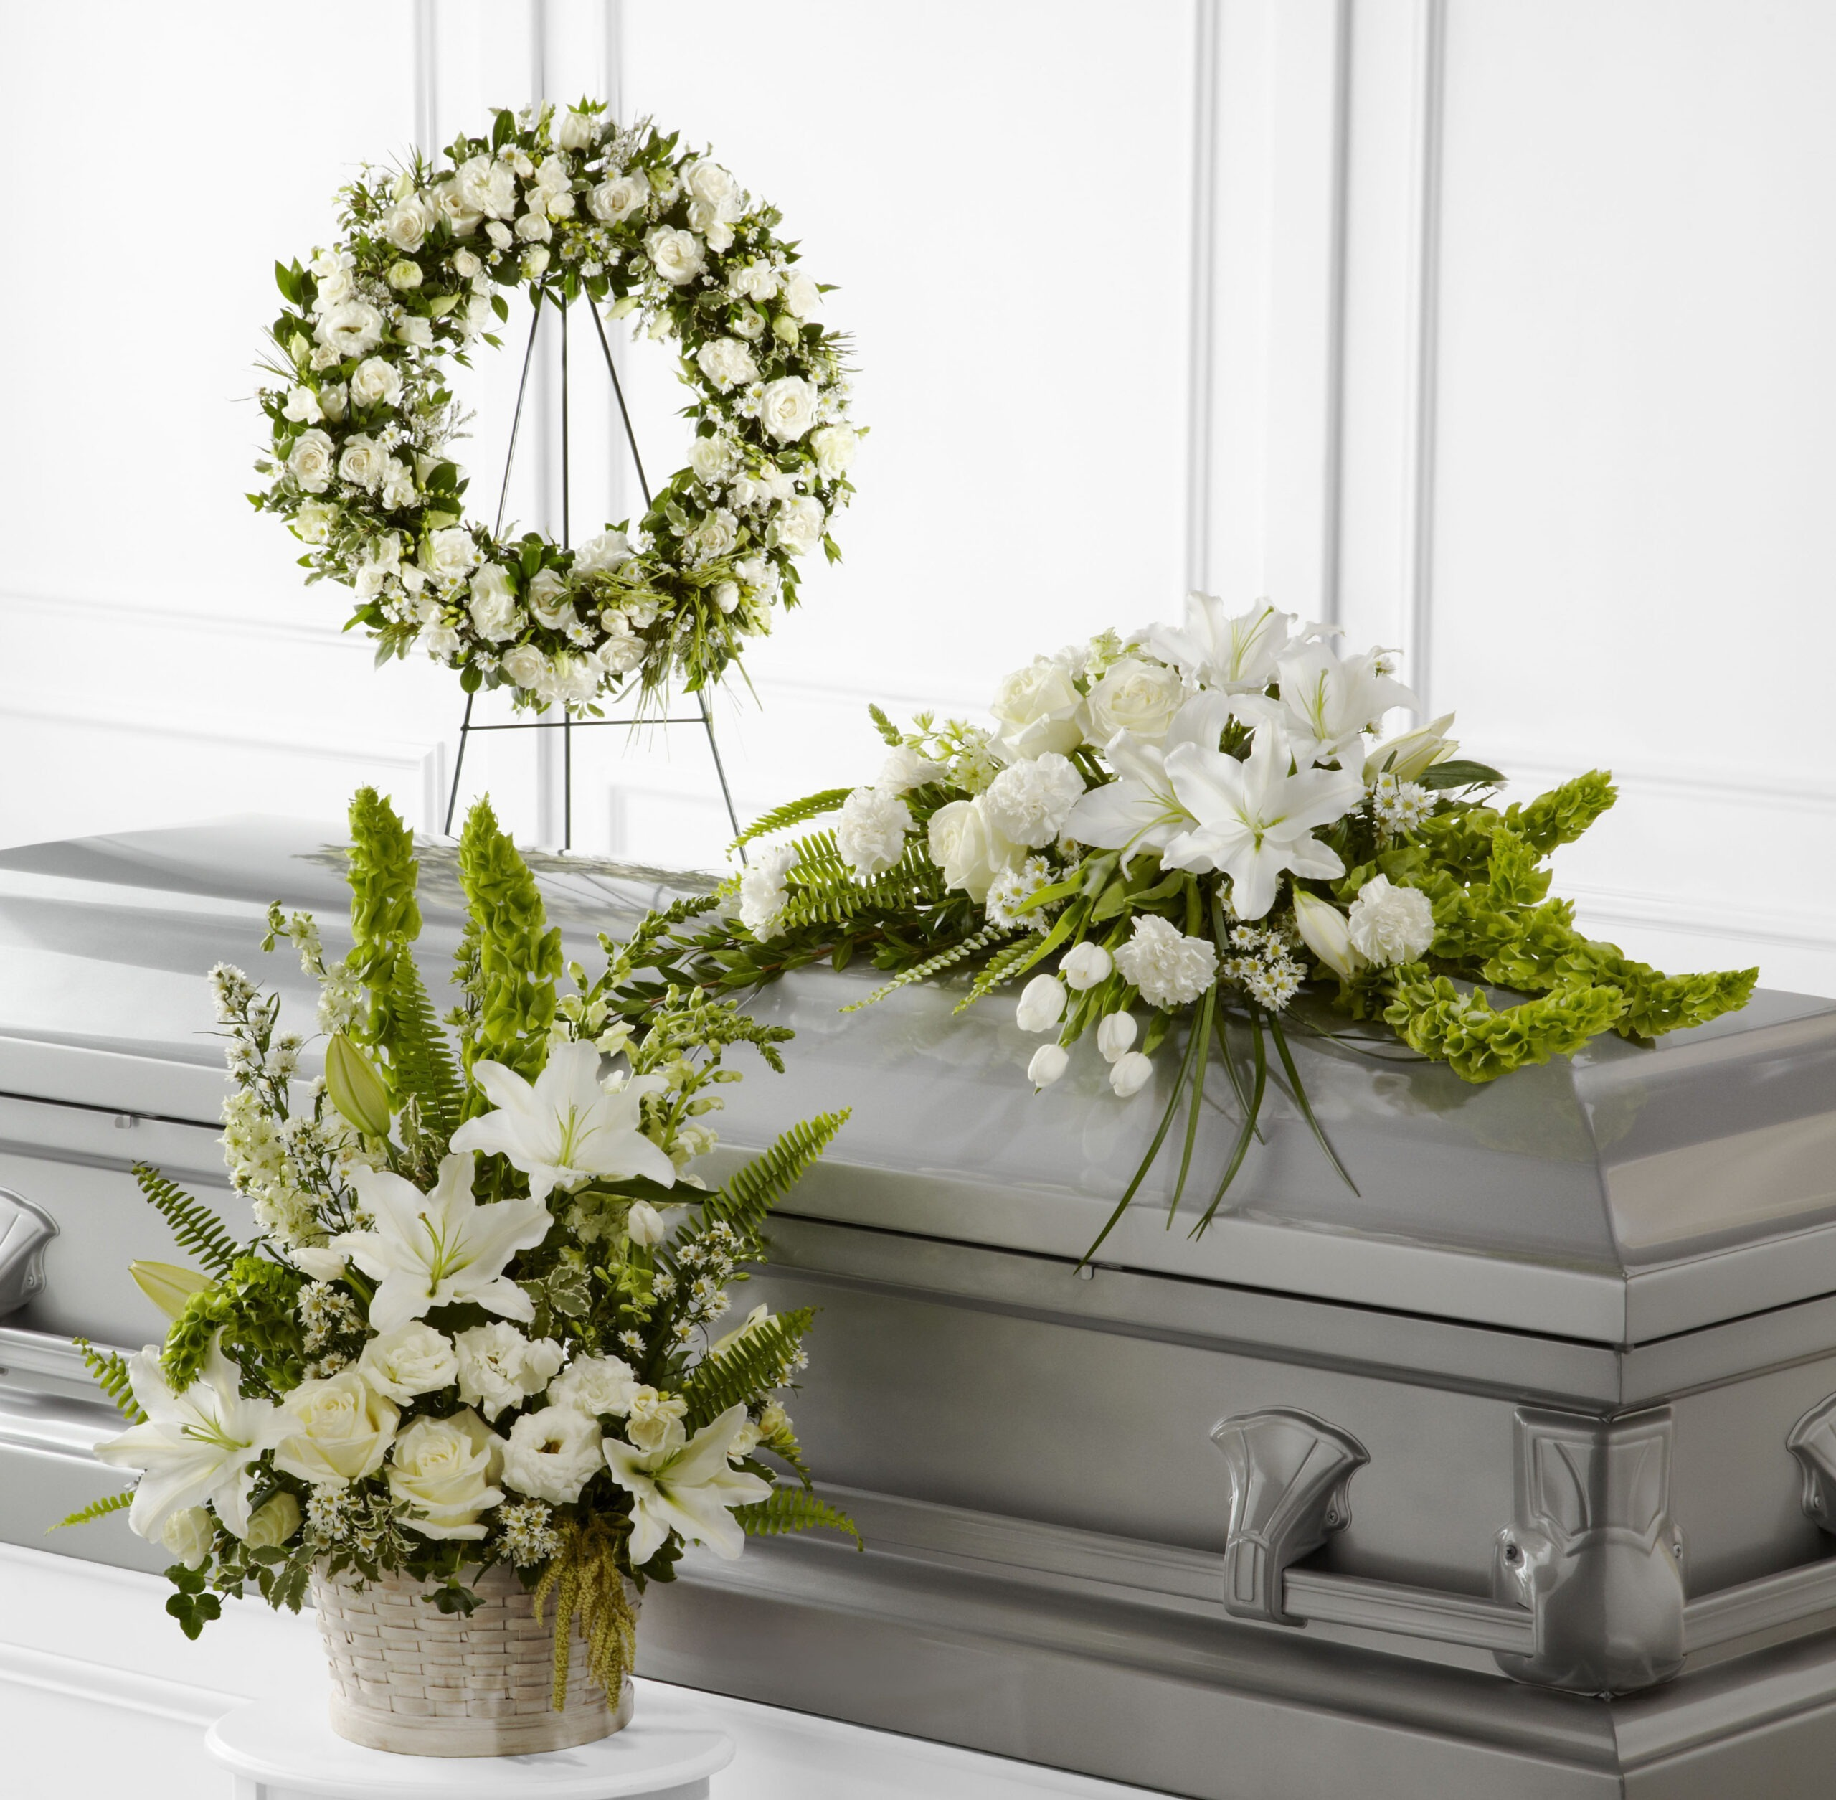 Funeral Vase Arrangements